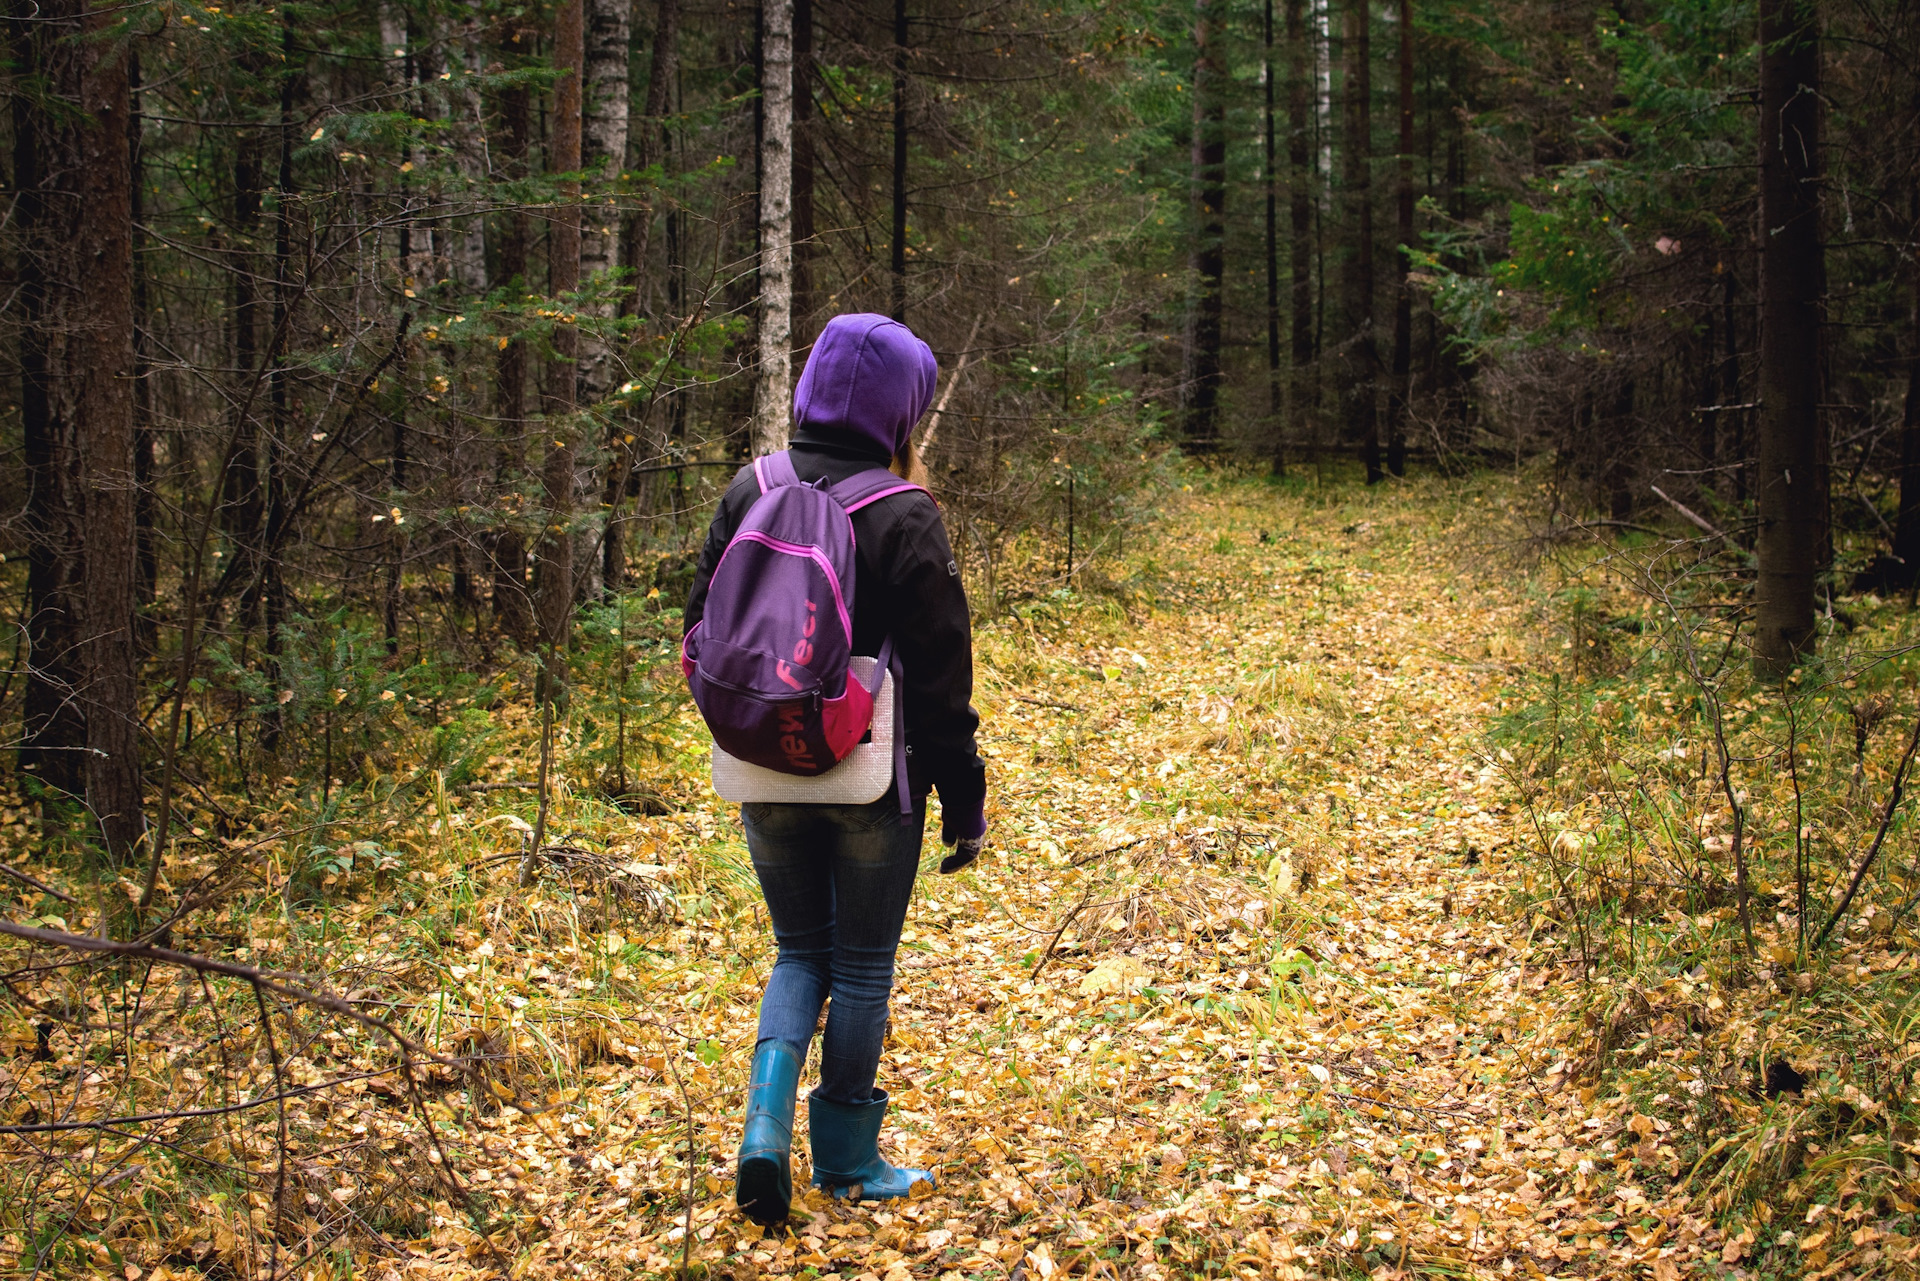 Впр гуляя в лесу попадаешь. Девочка гуляет в лесу. Прогулки по лесу. Девочка в лесу прогулка. Прогулка по лесу девушка.